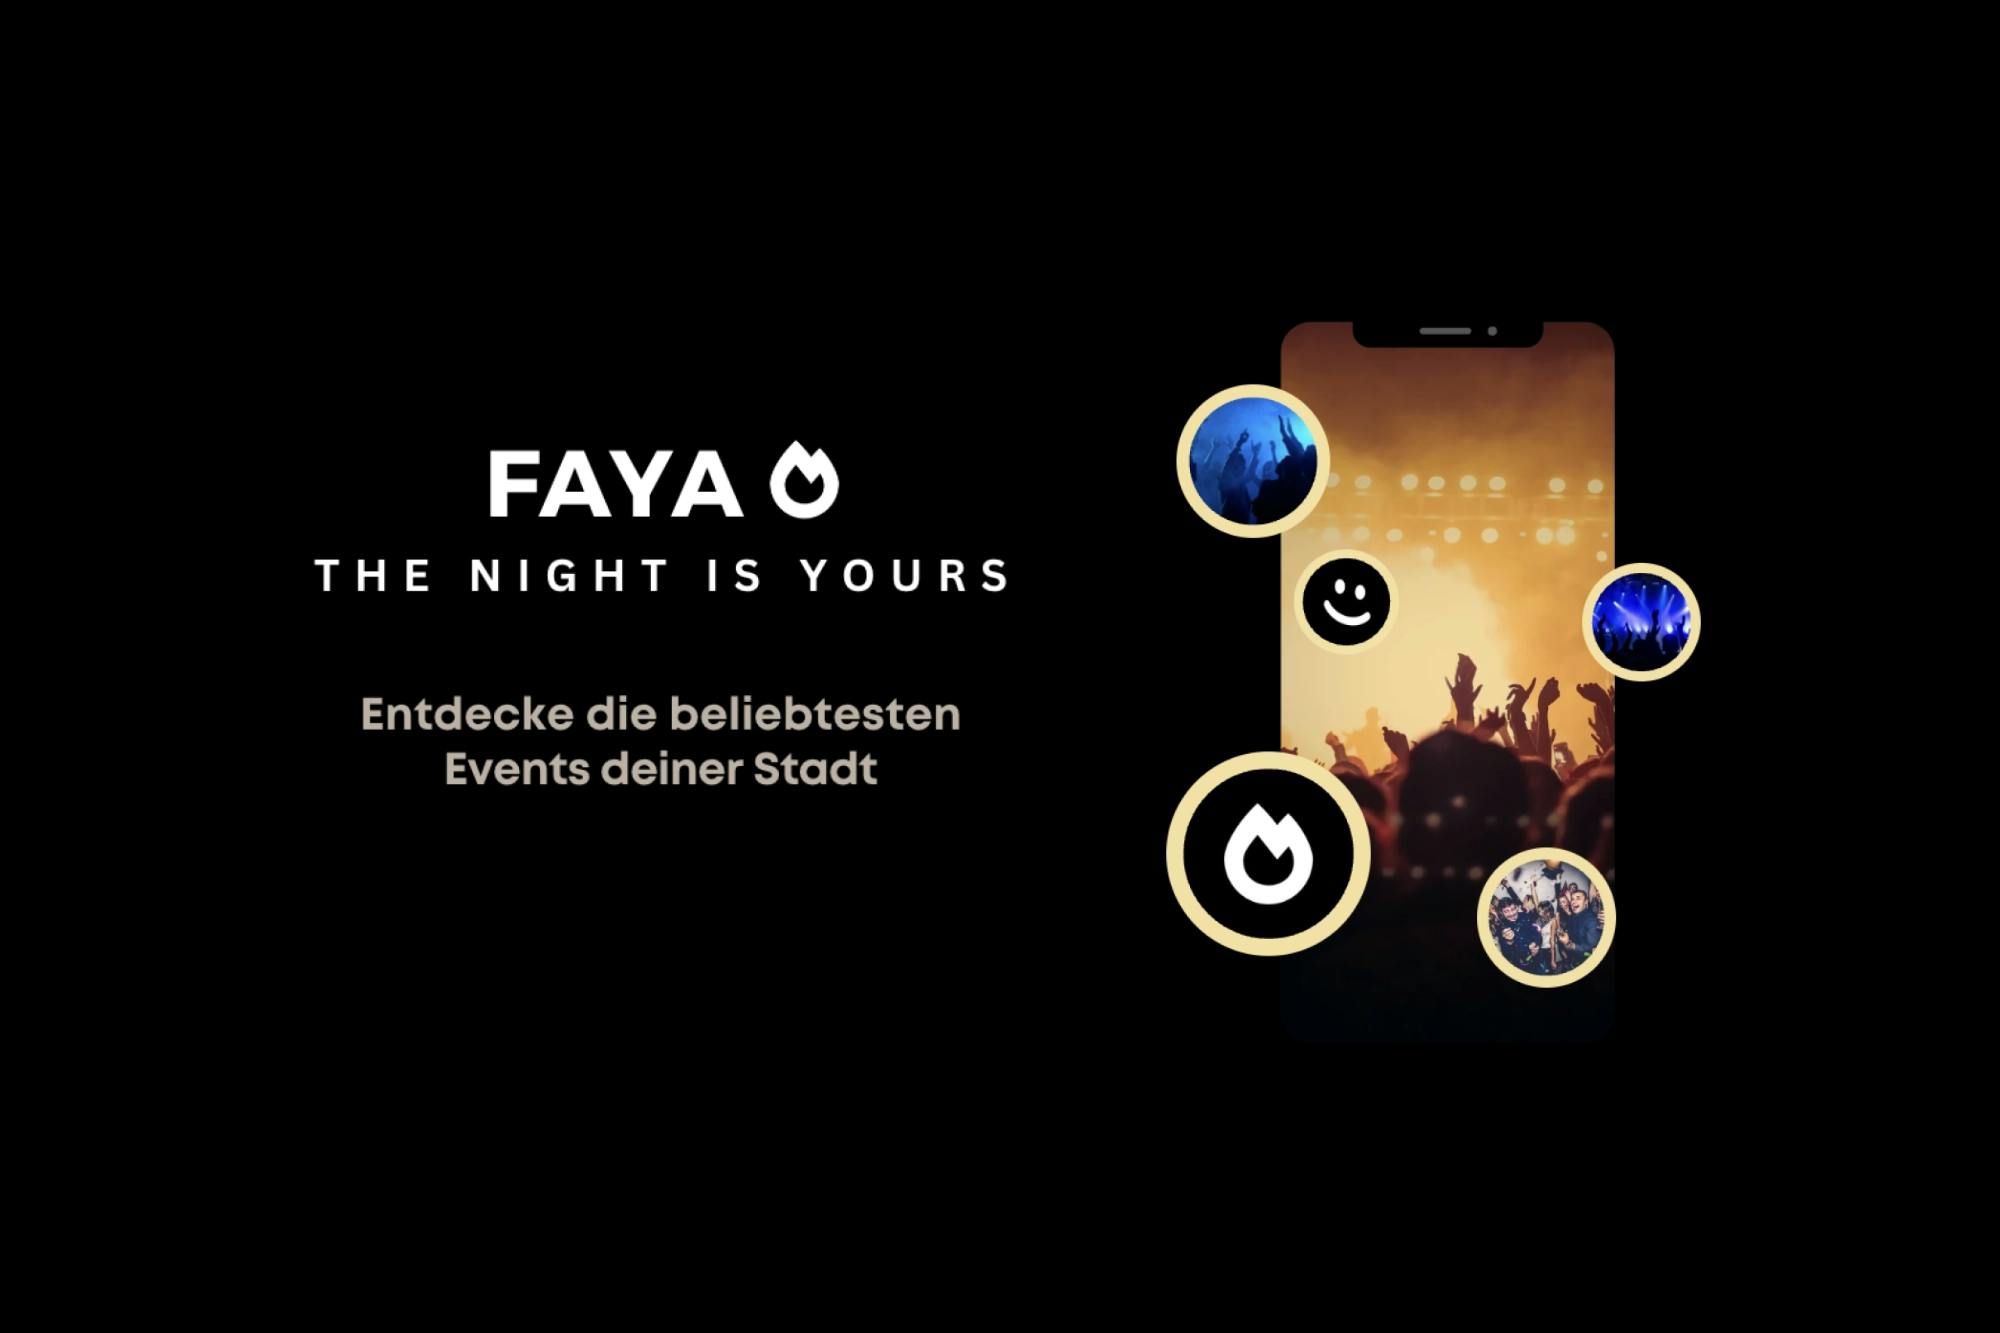 Links im Bild ist das Faya Logo zu sehen. Rechts ist ein Smartphone, welches die Faya App zeigt.